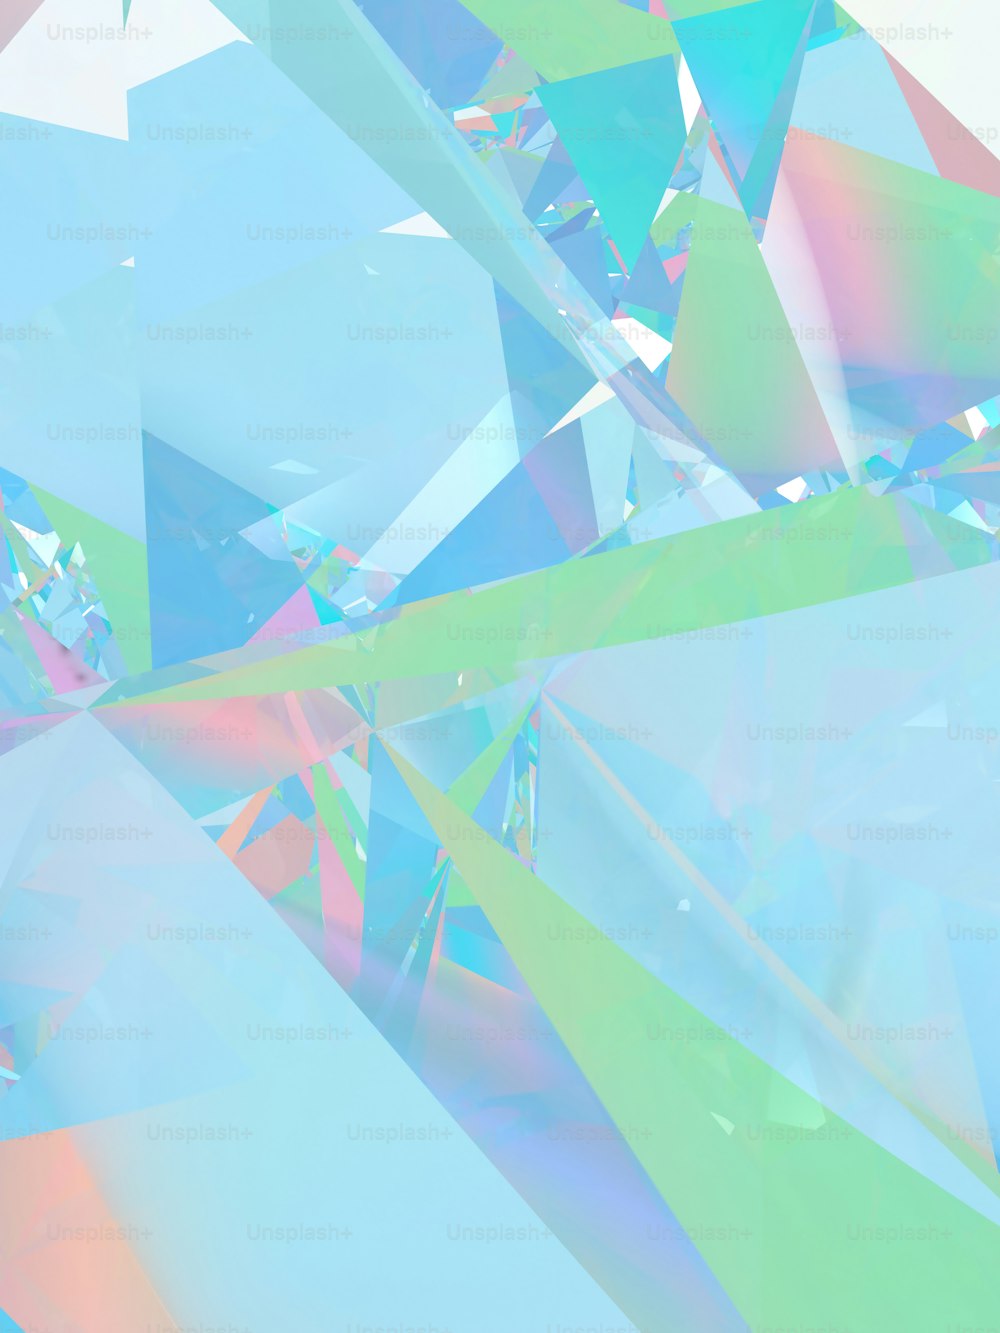 une image multicolore d’un objet ressemblant à un diamant